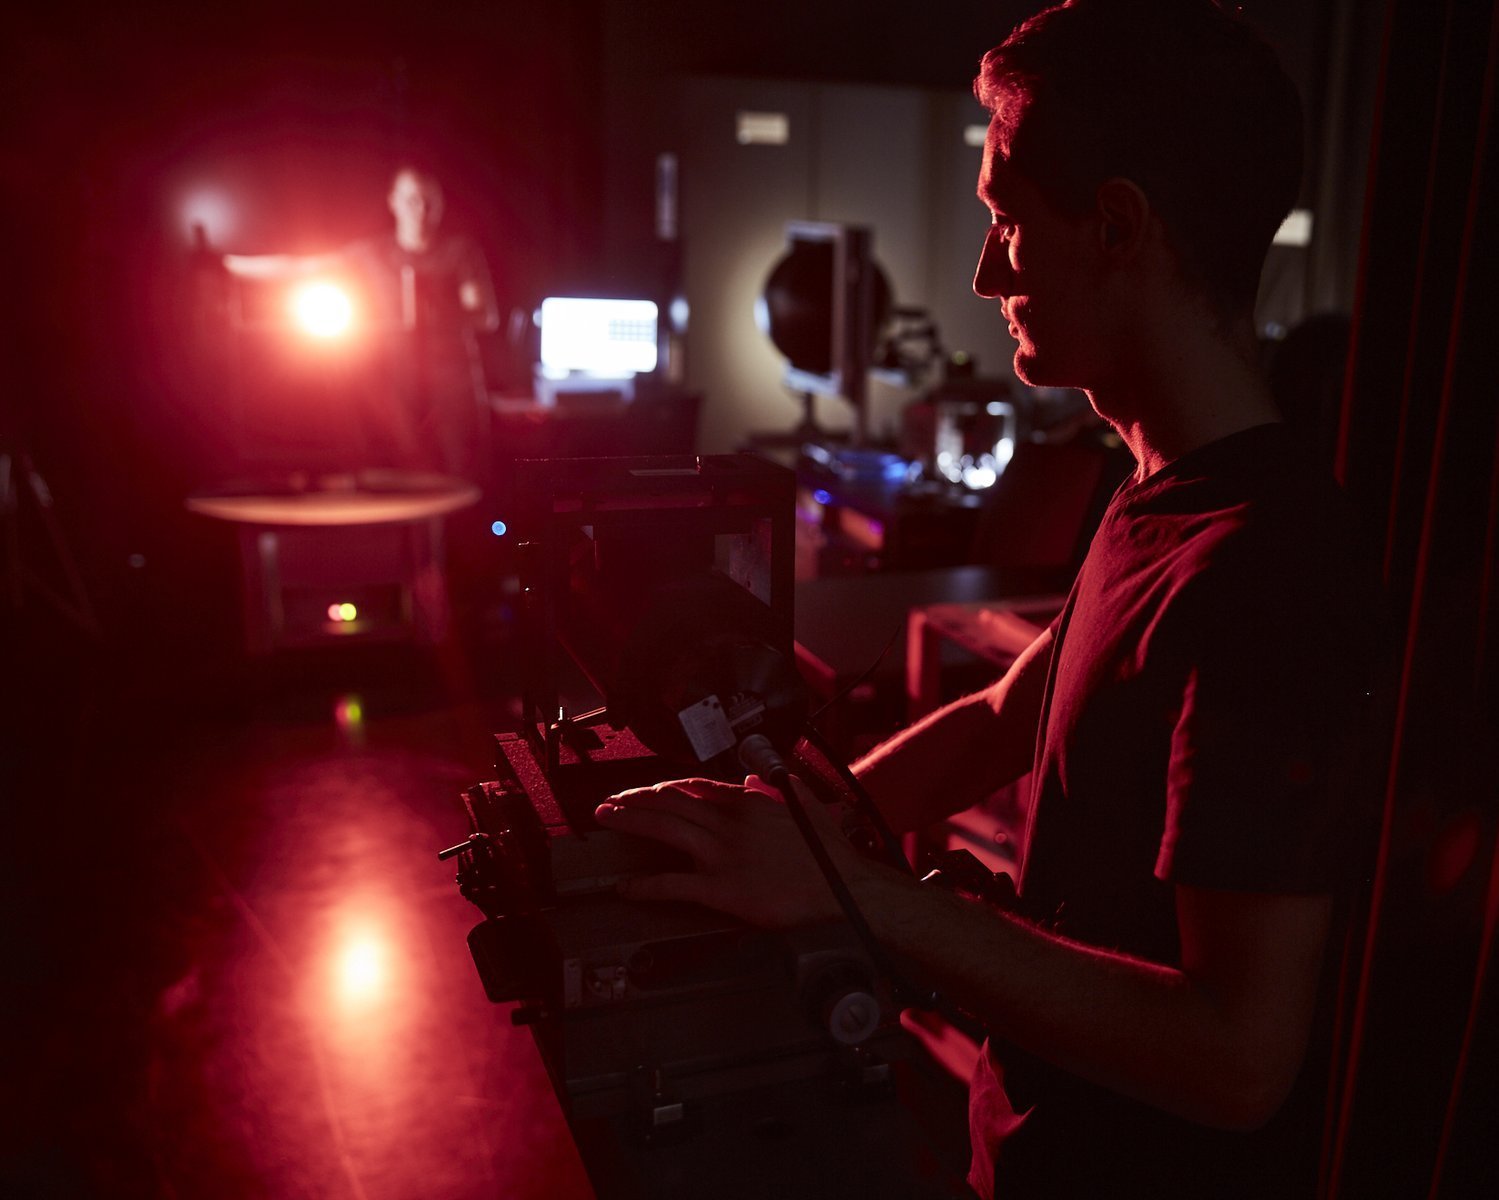 Man blickt in ein abgedunkeltes Labor. Im Hintergrund erkennt man schemenhaft einen Studierenden, der eine Lampe ausrichtet. Die Lichtquelle leuchtet stark direkt in die Kamera und das Streulicht erhellt den Raum in schwachem Rot. Im Vordergrund steht ein zweiter Student, der einen Dektor auf die Lichtquelle ausrichtet. 